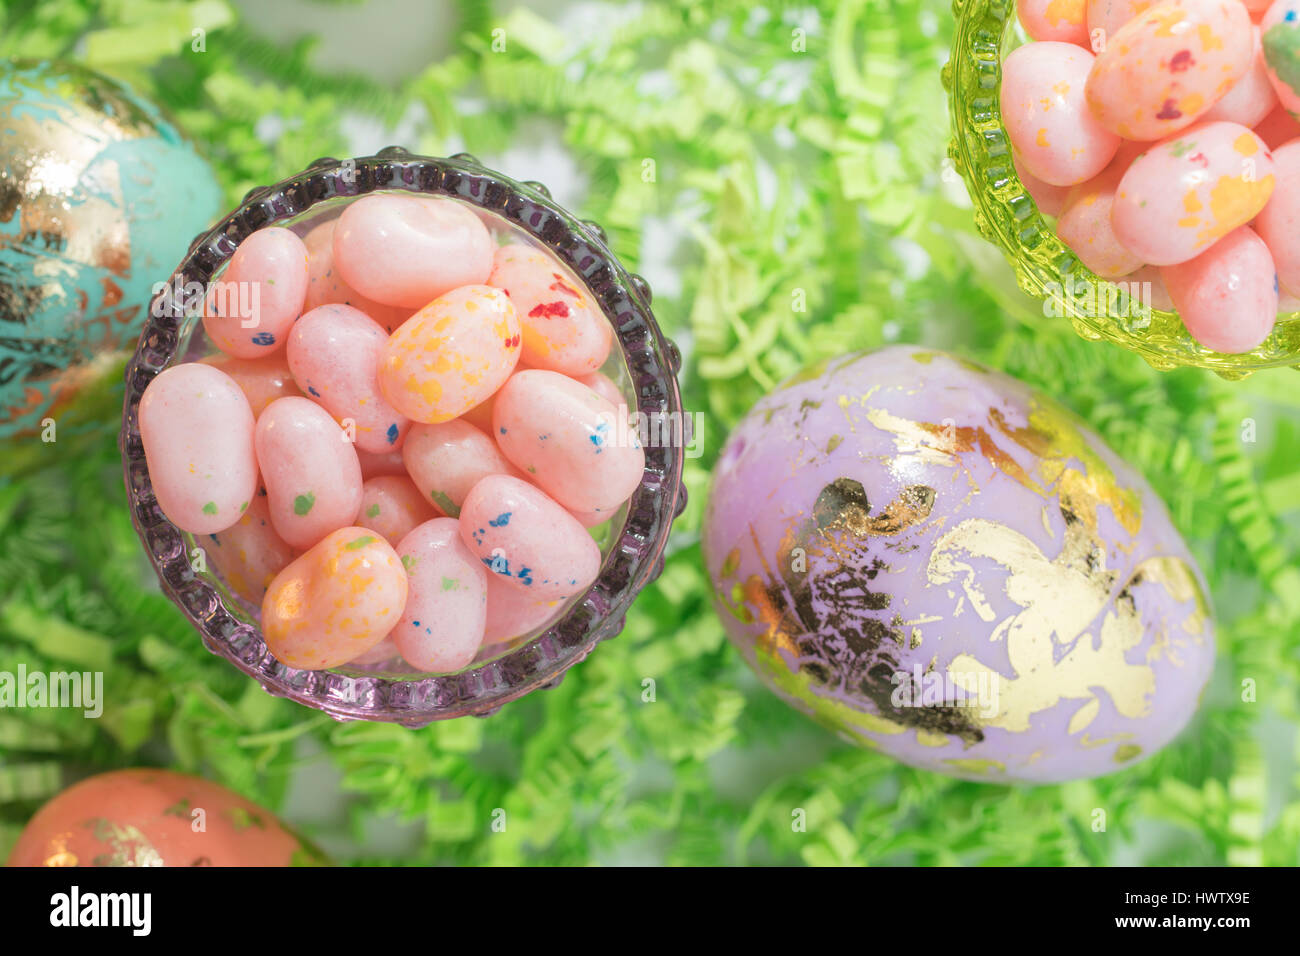 Los huevos de Pascua y Jelly Beans en un recipiente de vidrio y de papel crepé verde Foto de stock